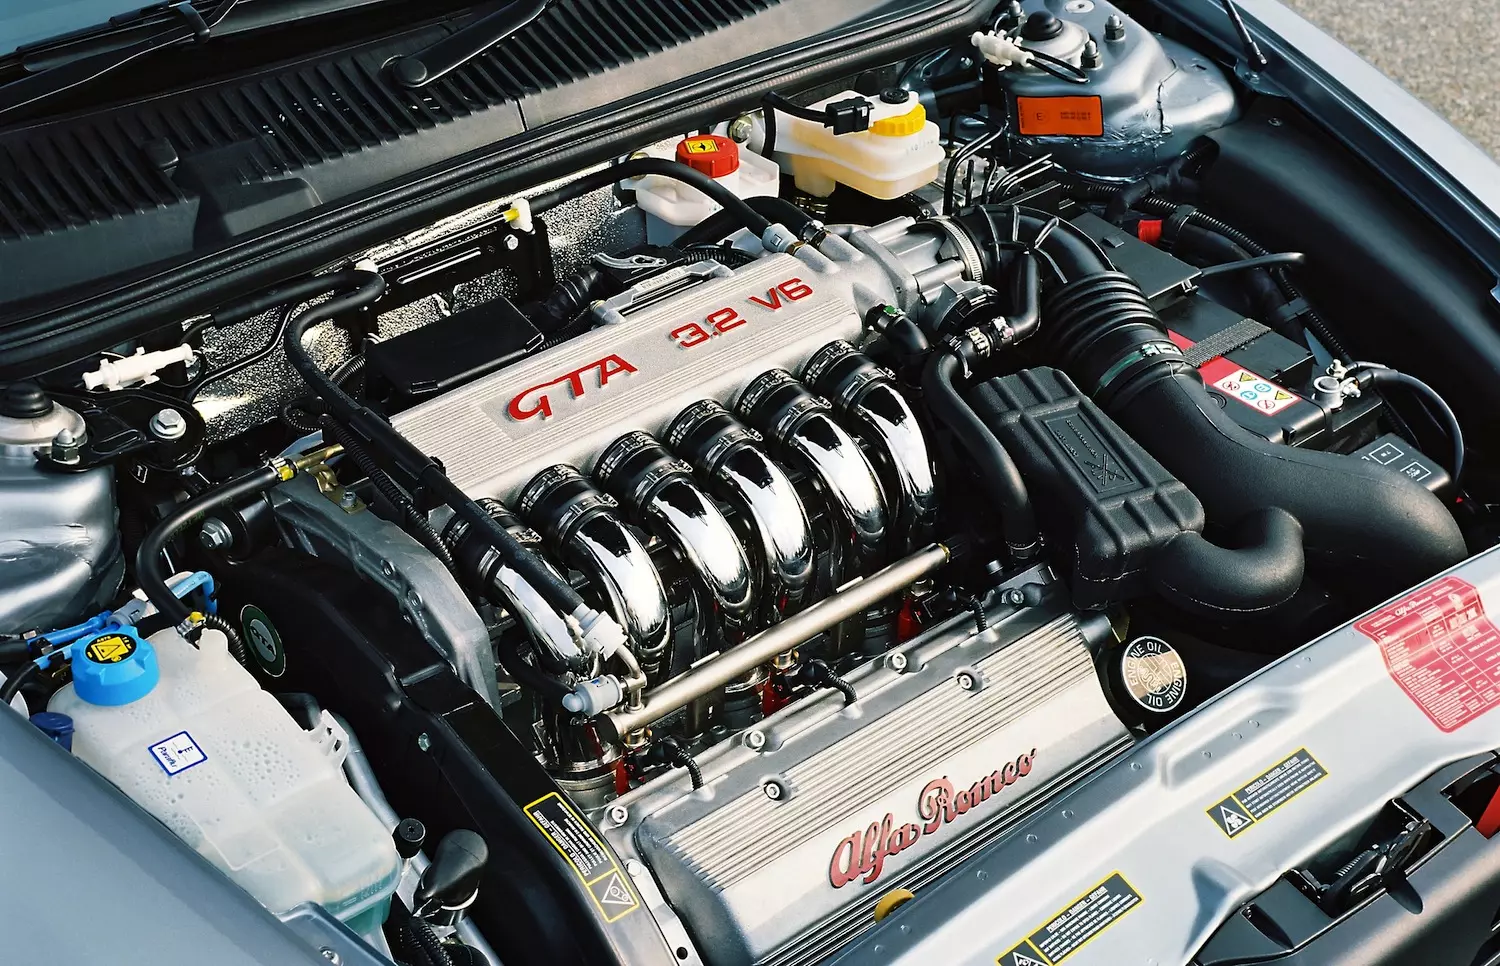 אלפא רומיאו 156 GTA — V6 Busso